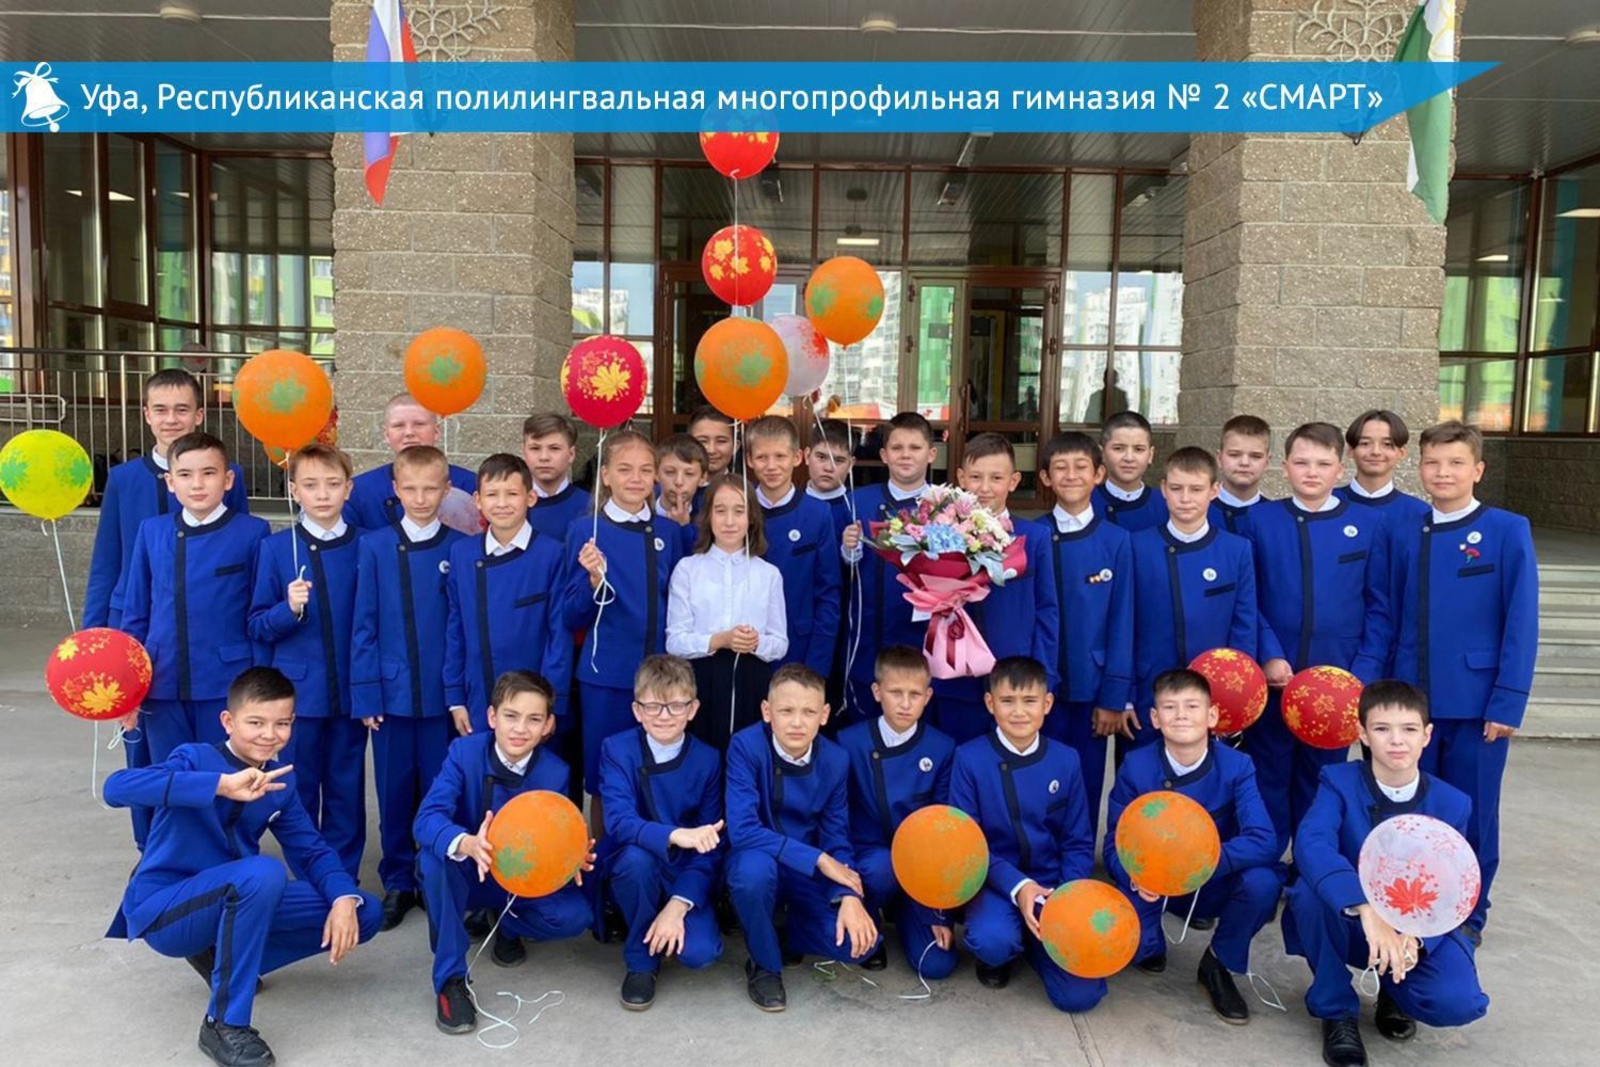 Сегодня по Башкирии открылись 79 «шаймуратовских» классов